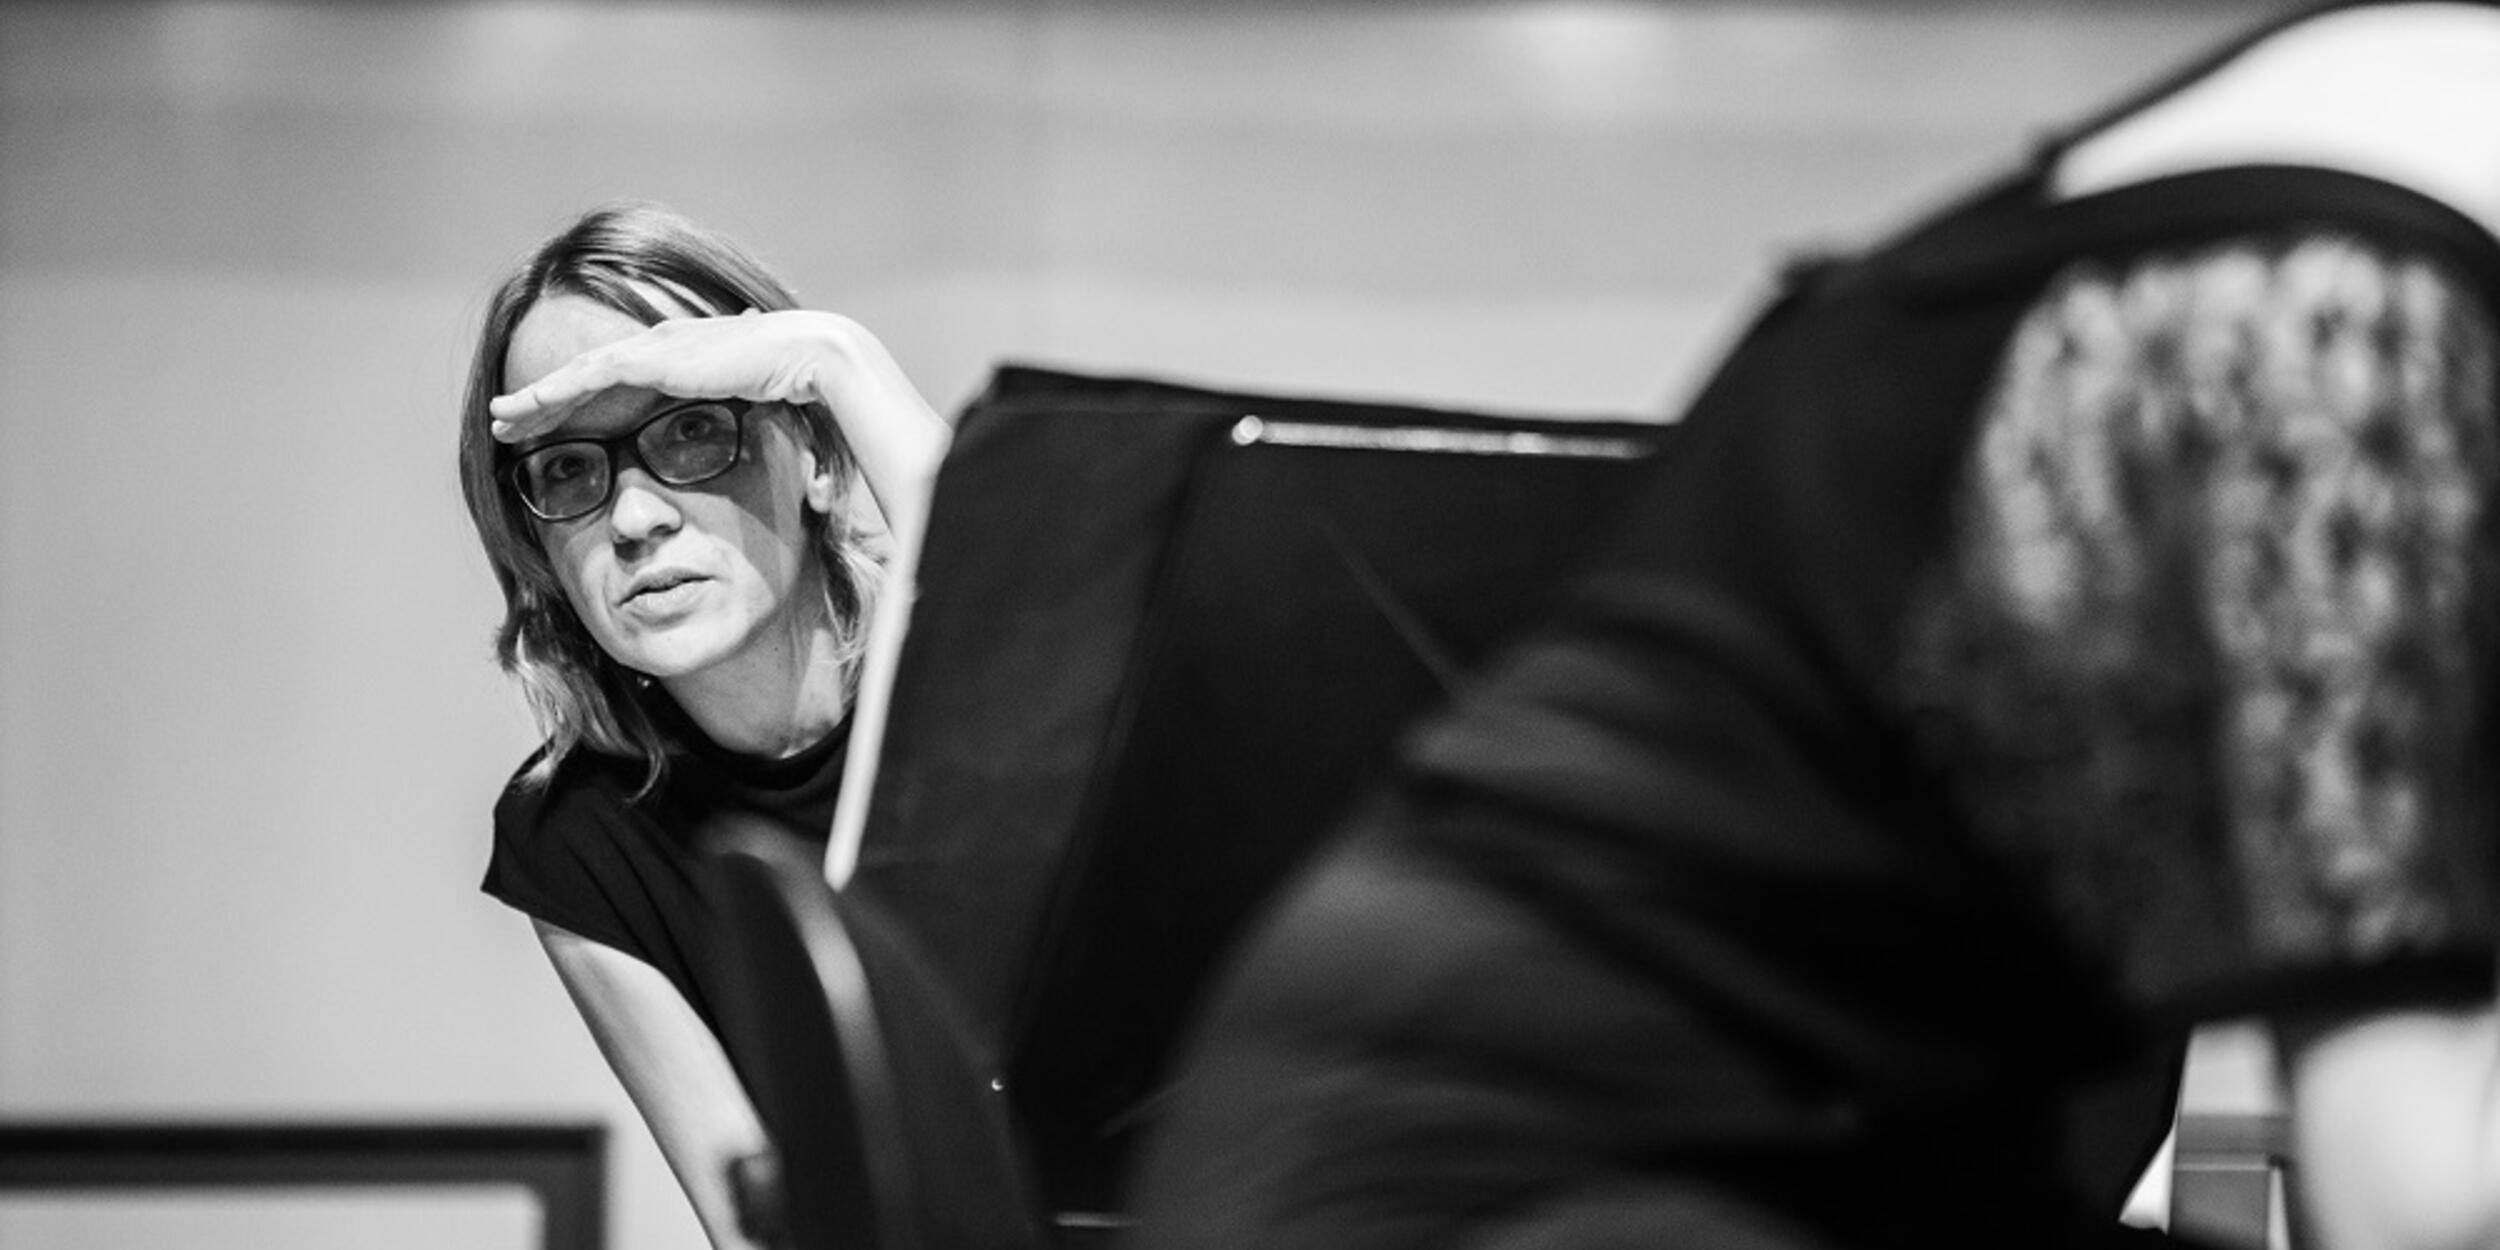 Bild schwarz-weiß, Frau sieht hinter einem Notenständer hervor | © Fabian Schober